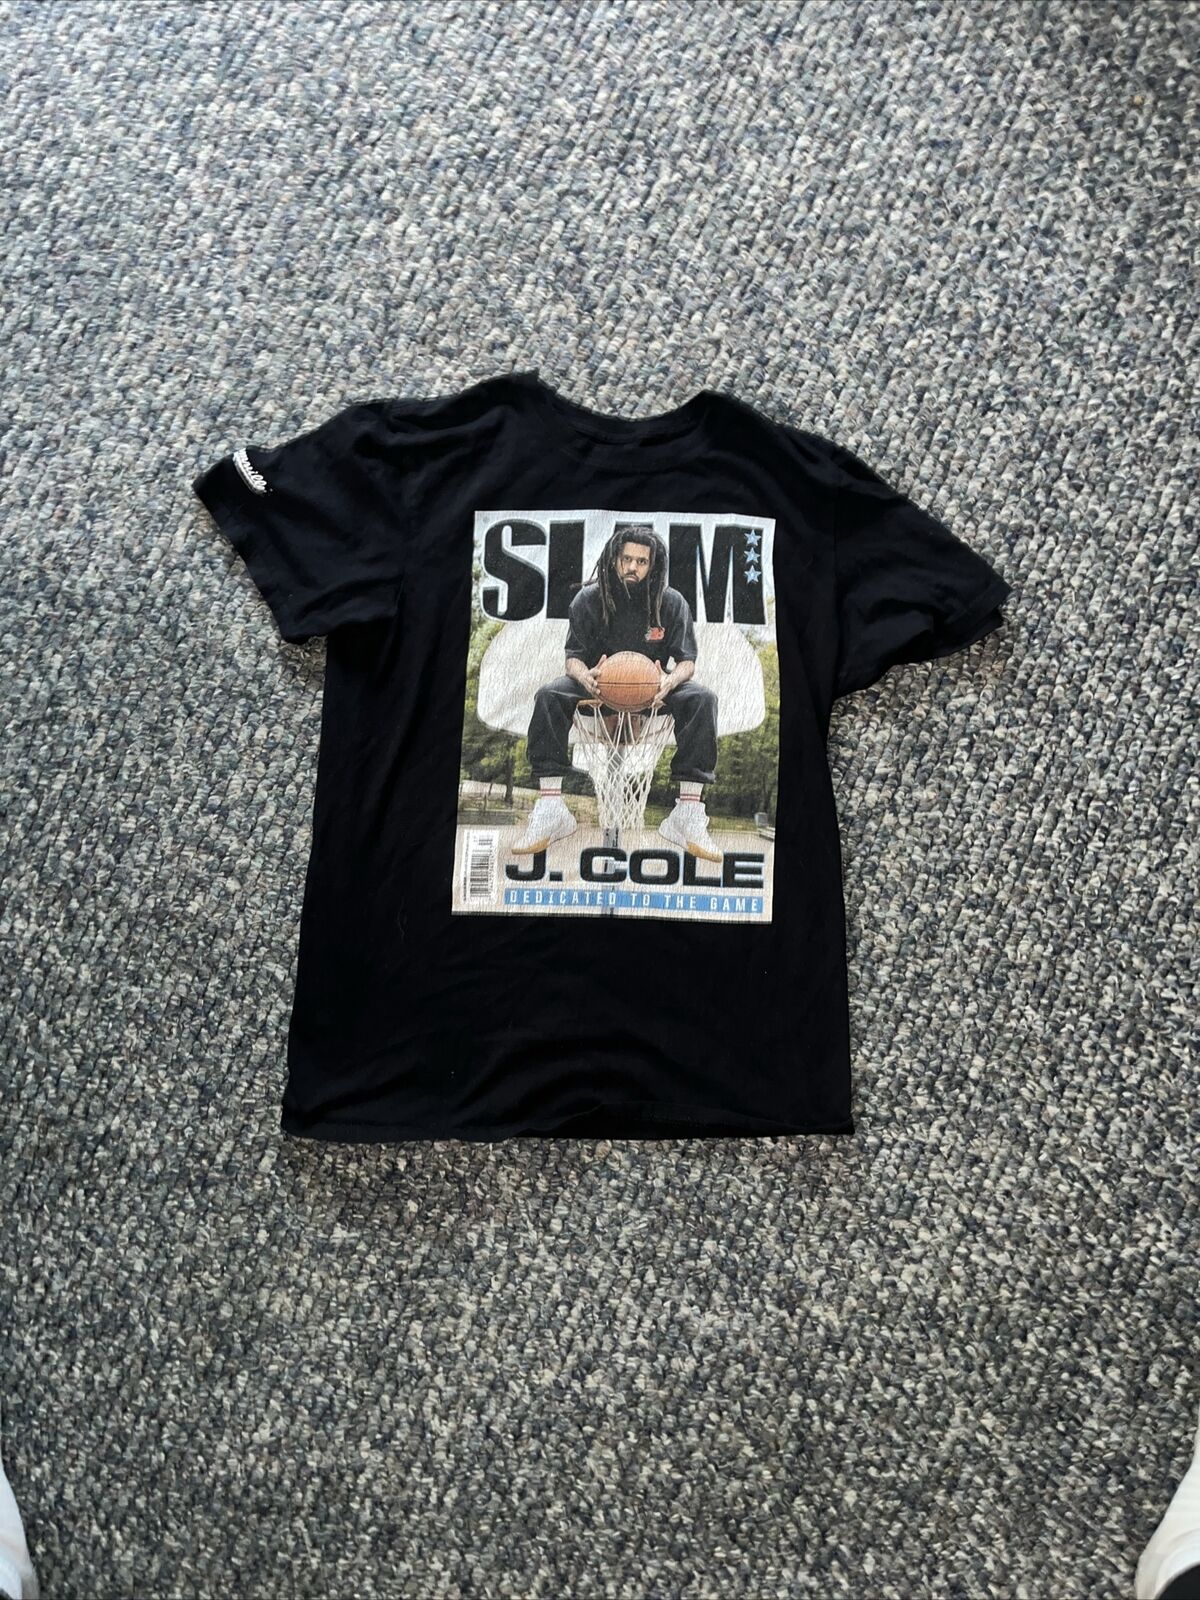 Vintage J Cole Shirt, Rapper Shirt, Slam Magazine J cole Graphic Size S